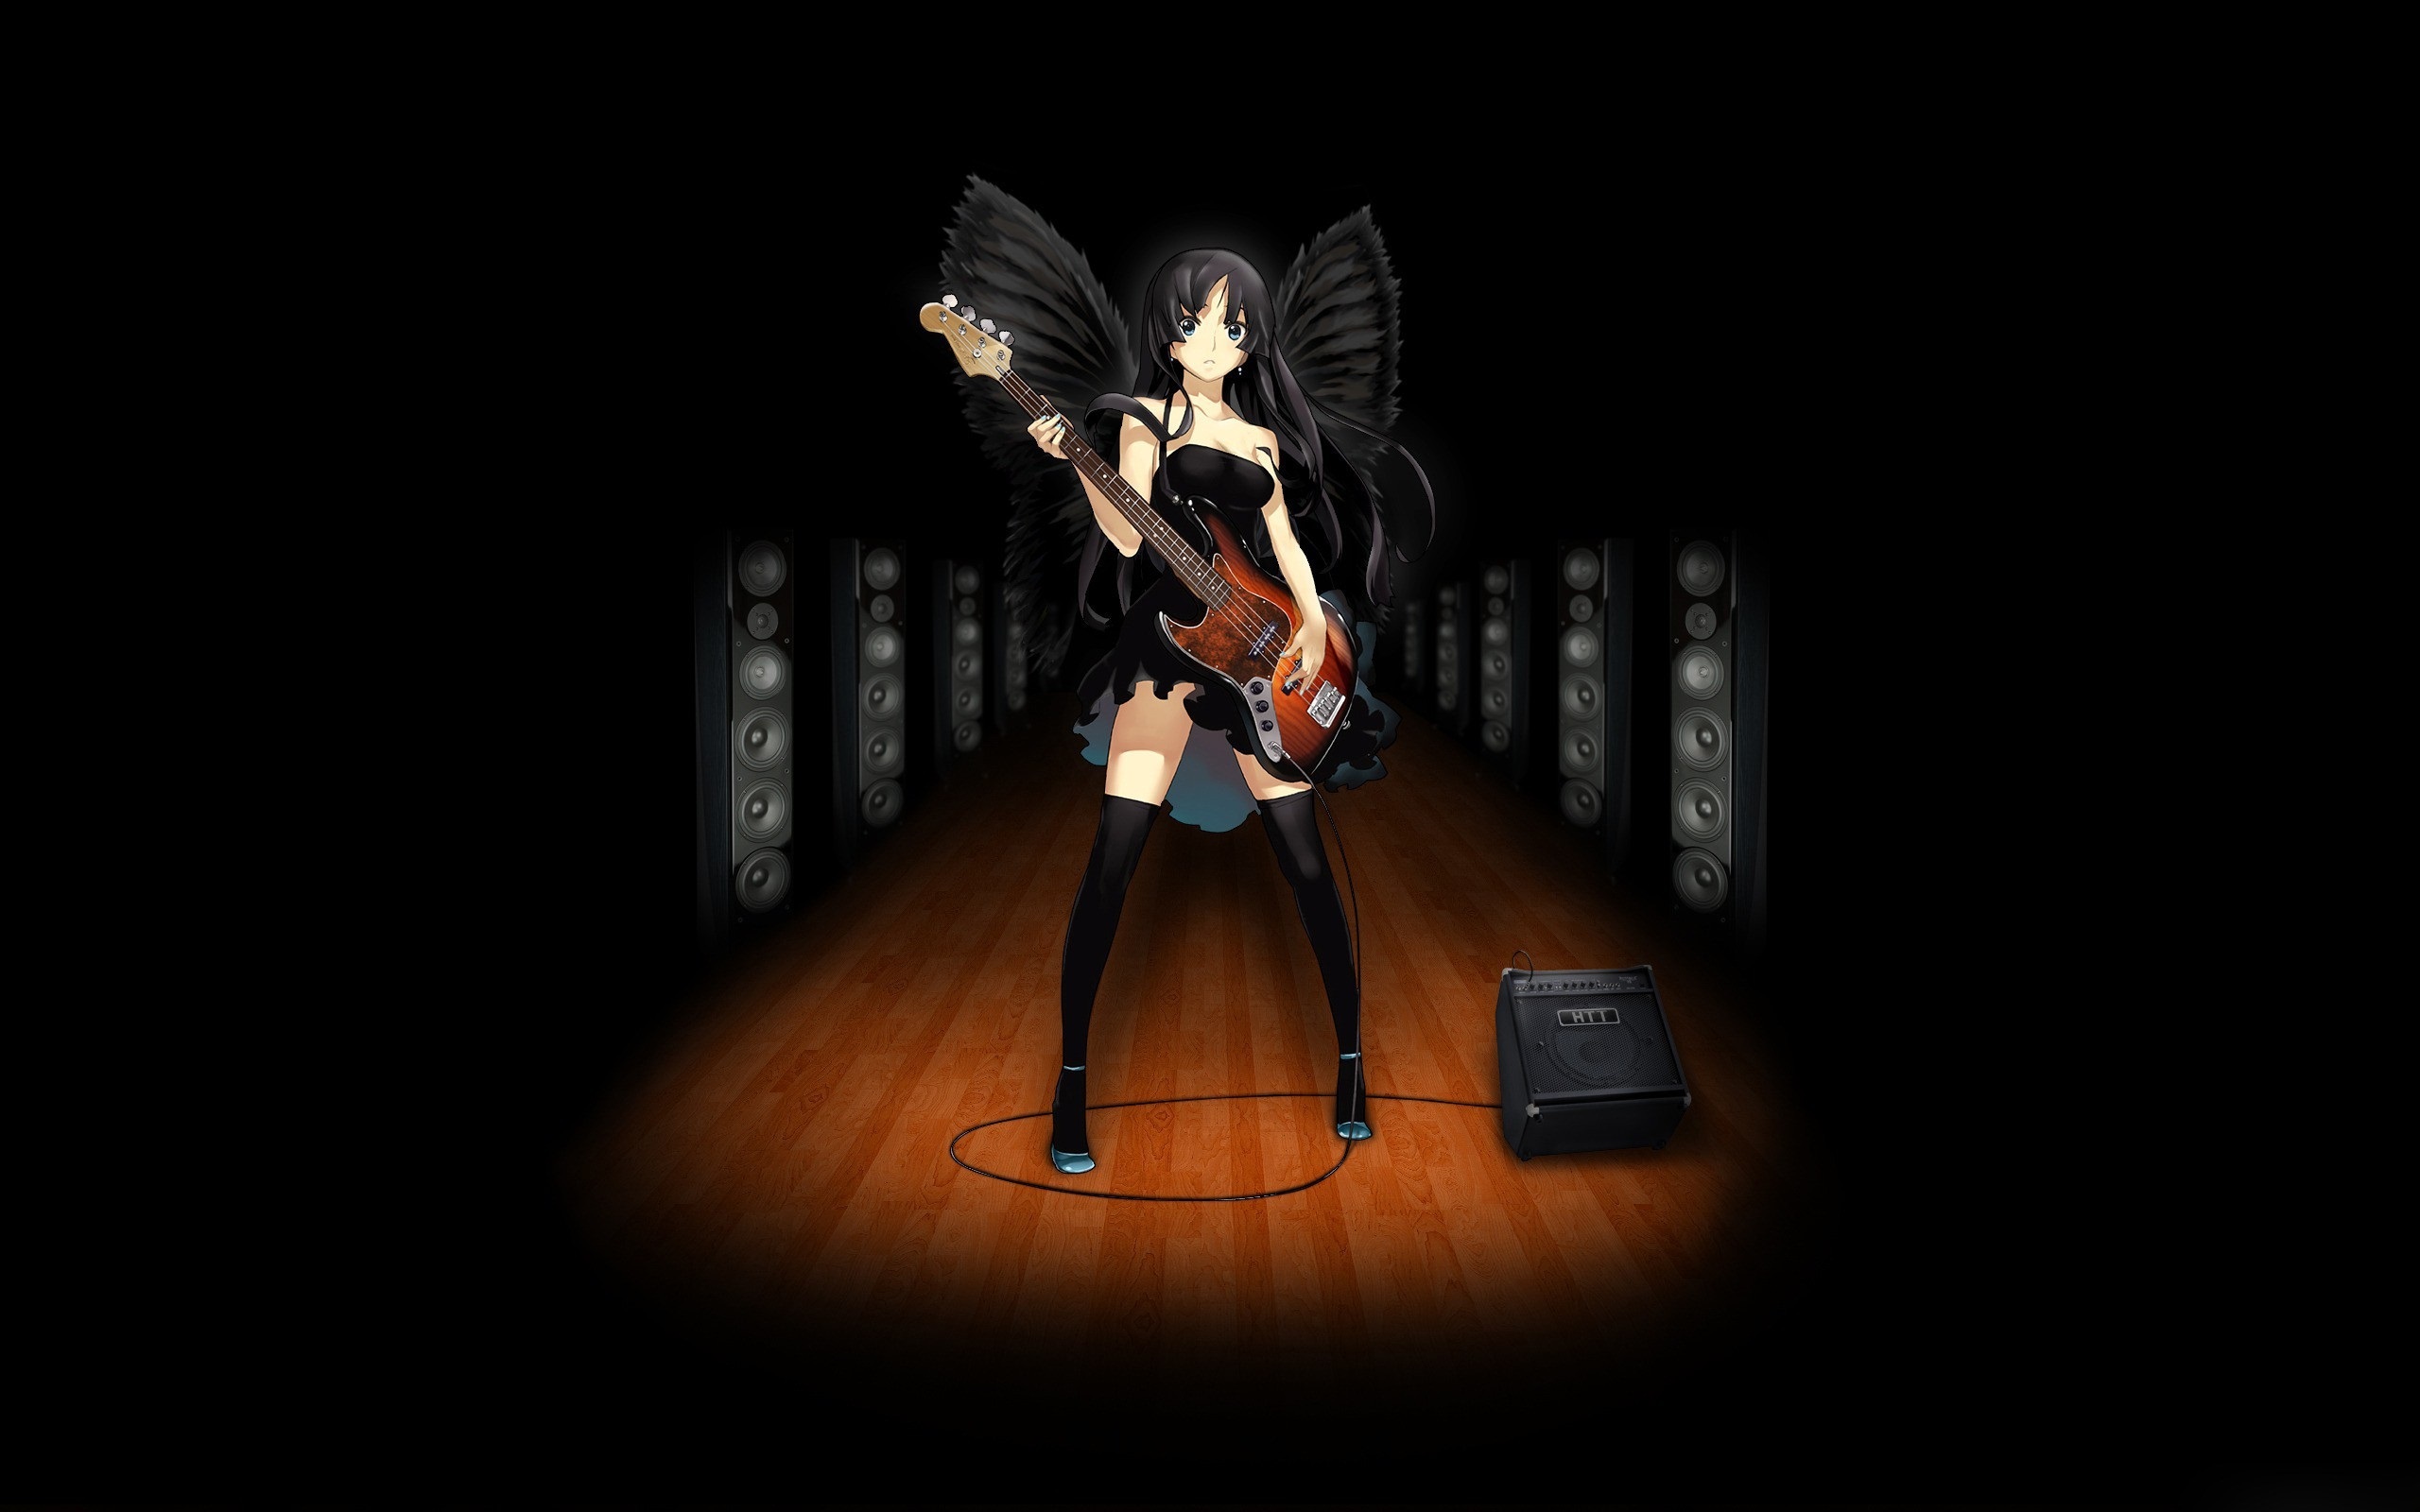 Wallpaper Black Angel Girl, Anime, Play Guitar, Music - Guitar Wings Wallpaper Iphone - HD Wallpaper 